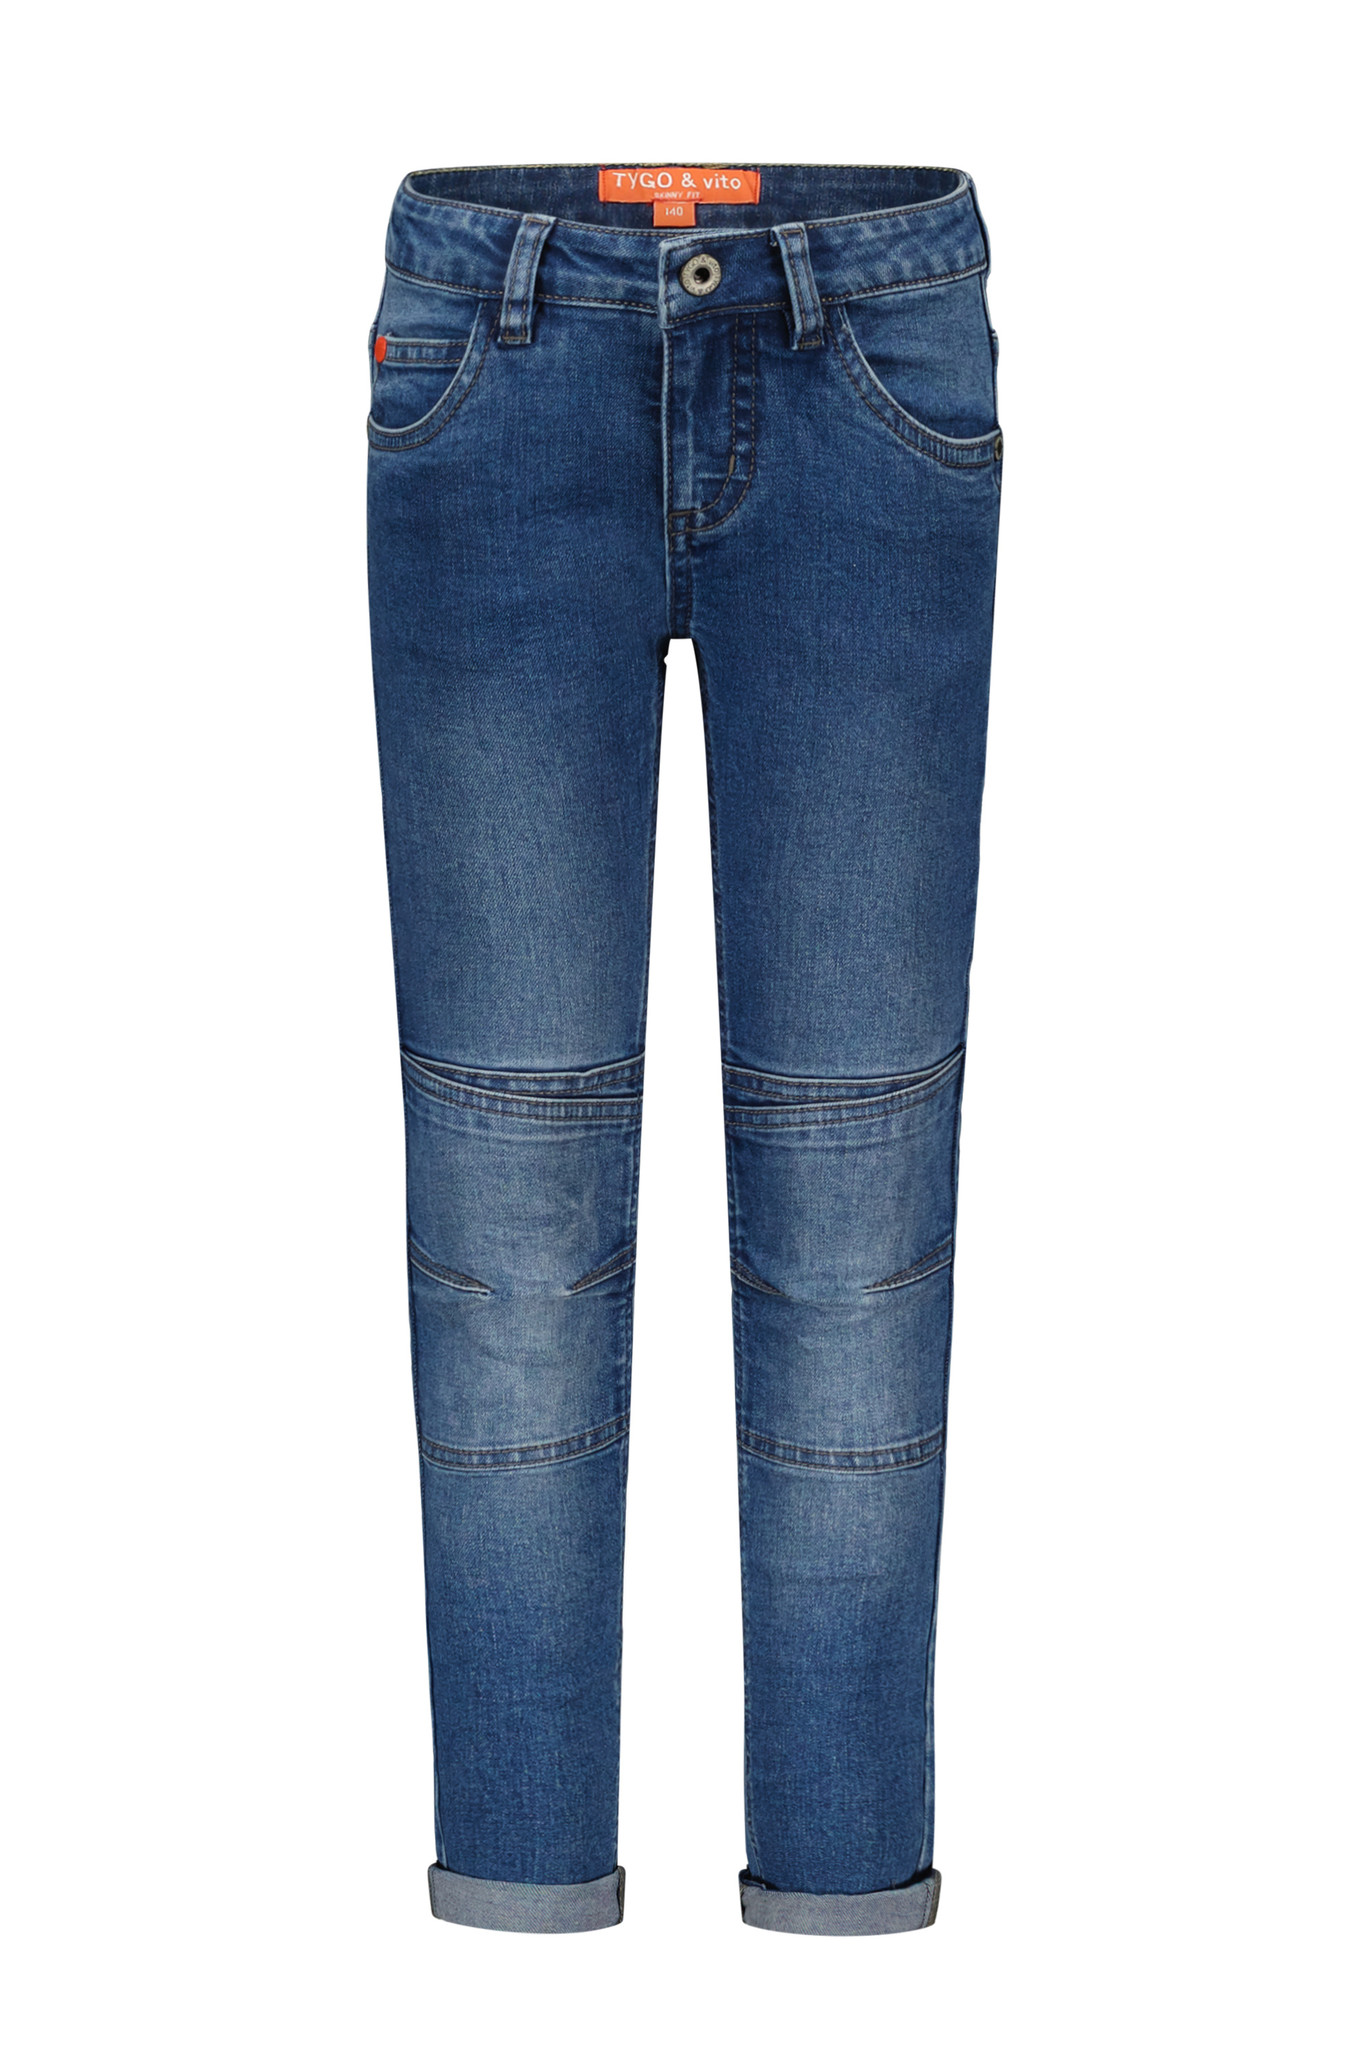 Tygo & Vito Jongens jeans broek met dubbel kniestuk - Medium used